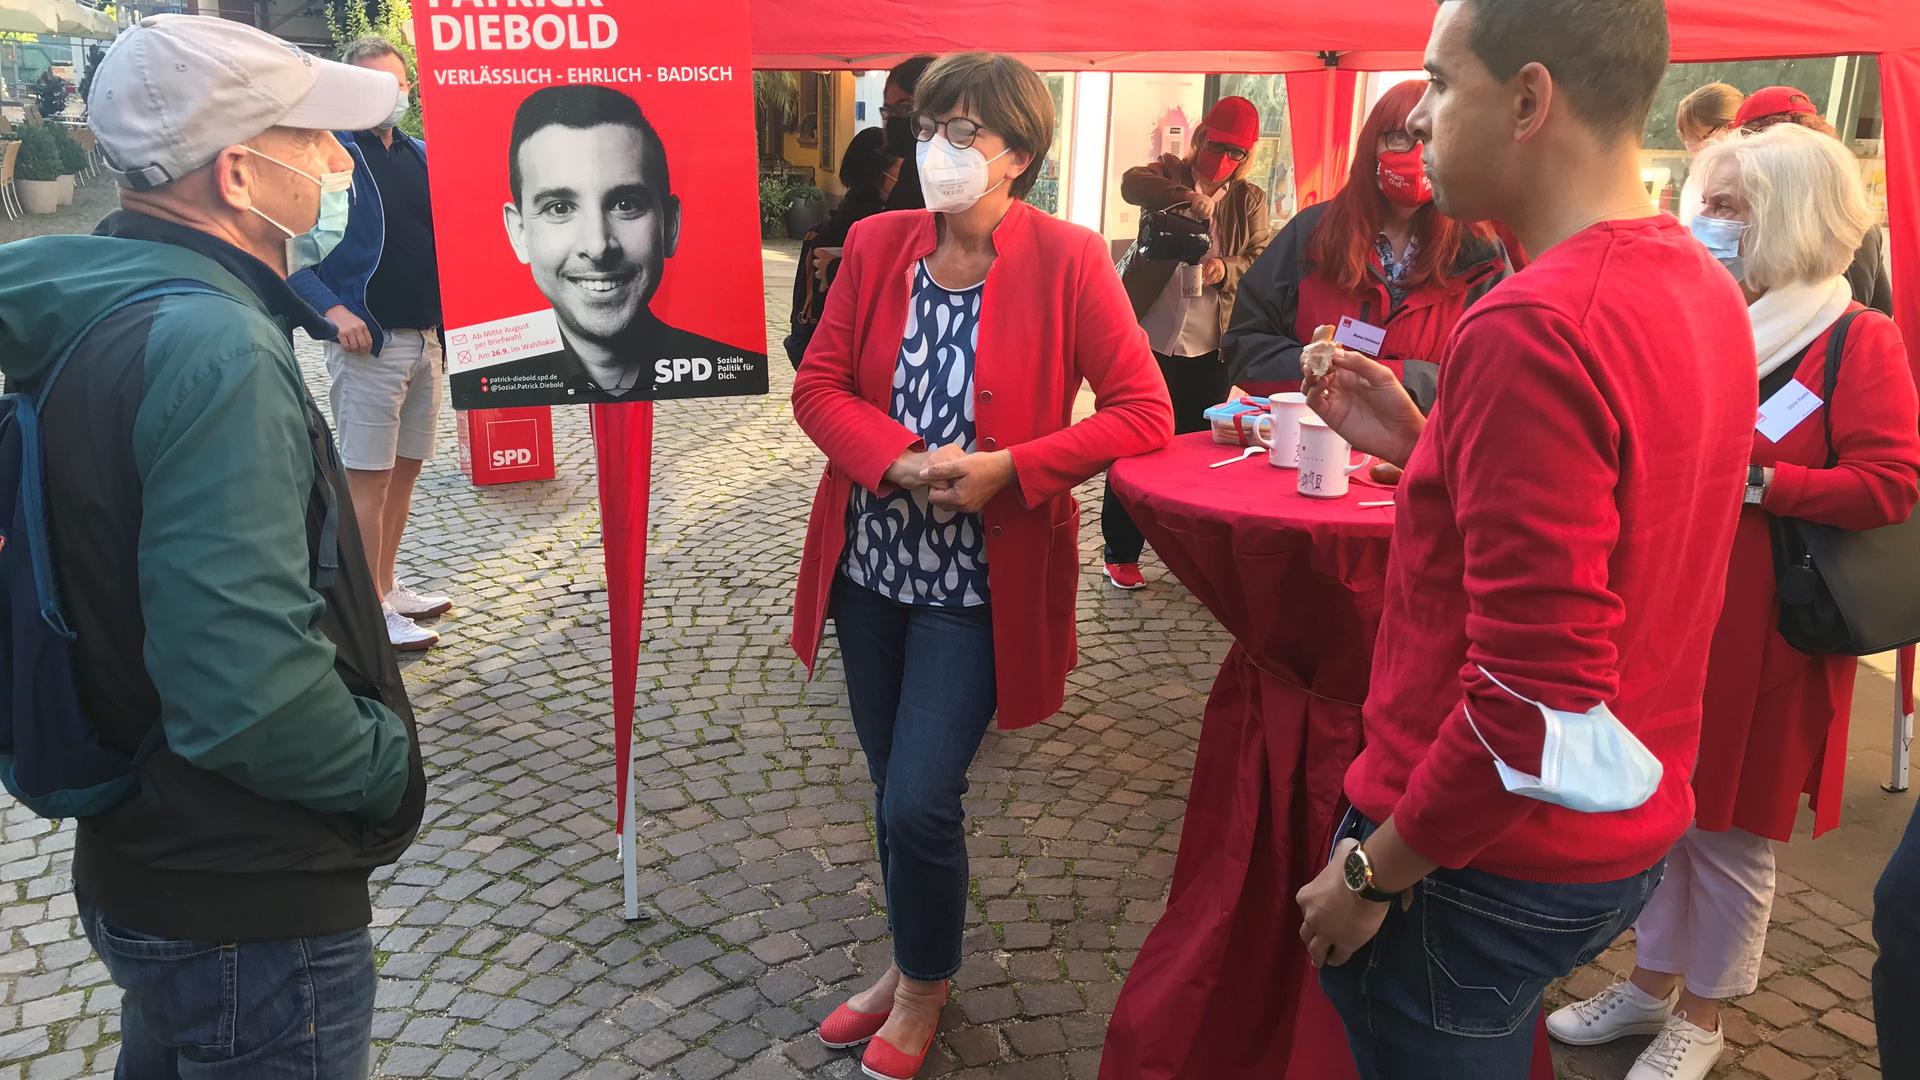 Im Gespräch: SPD-Co-Chefin Saskia Esken (Mitte) und der Ettlinger Bundestagskandidat Patrick Diebold )rechts) stellen sich auf dem Rathausplatz den Fragen der Passanten.